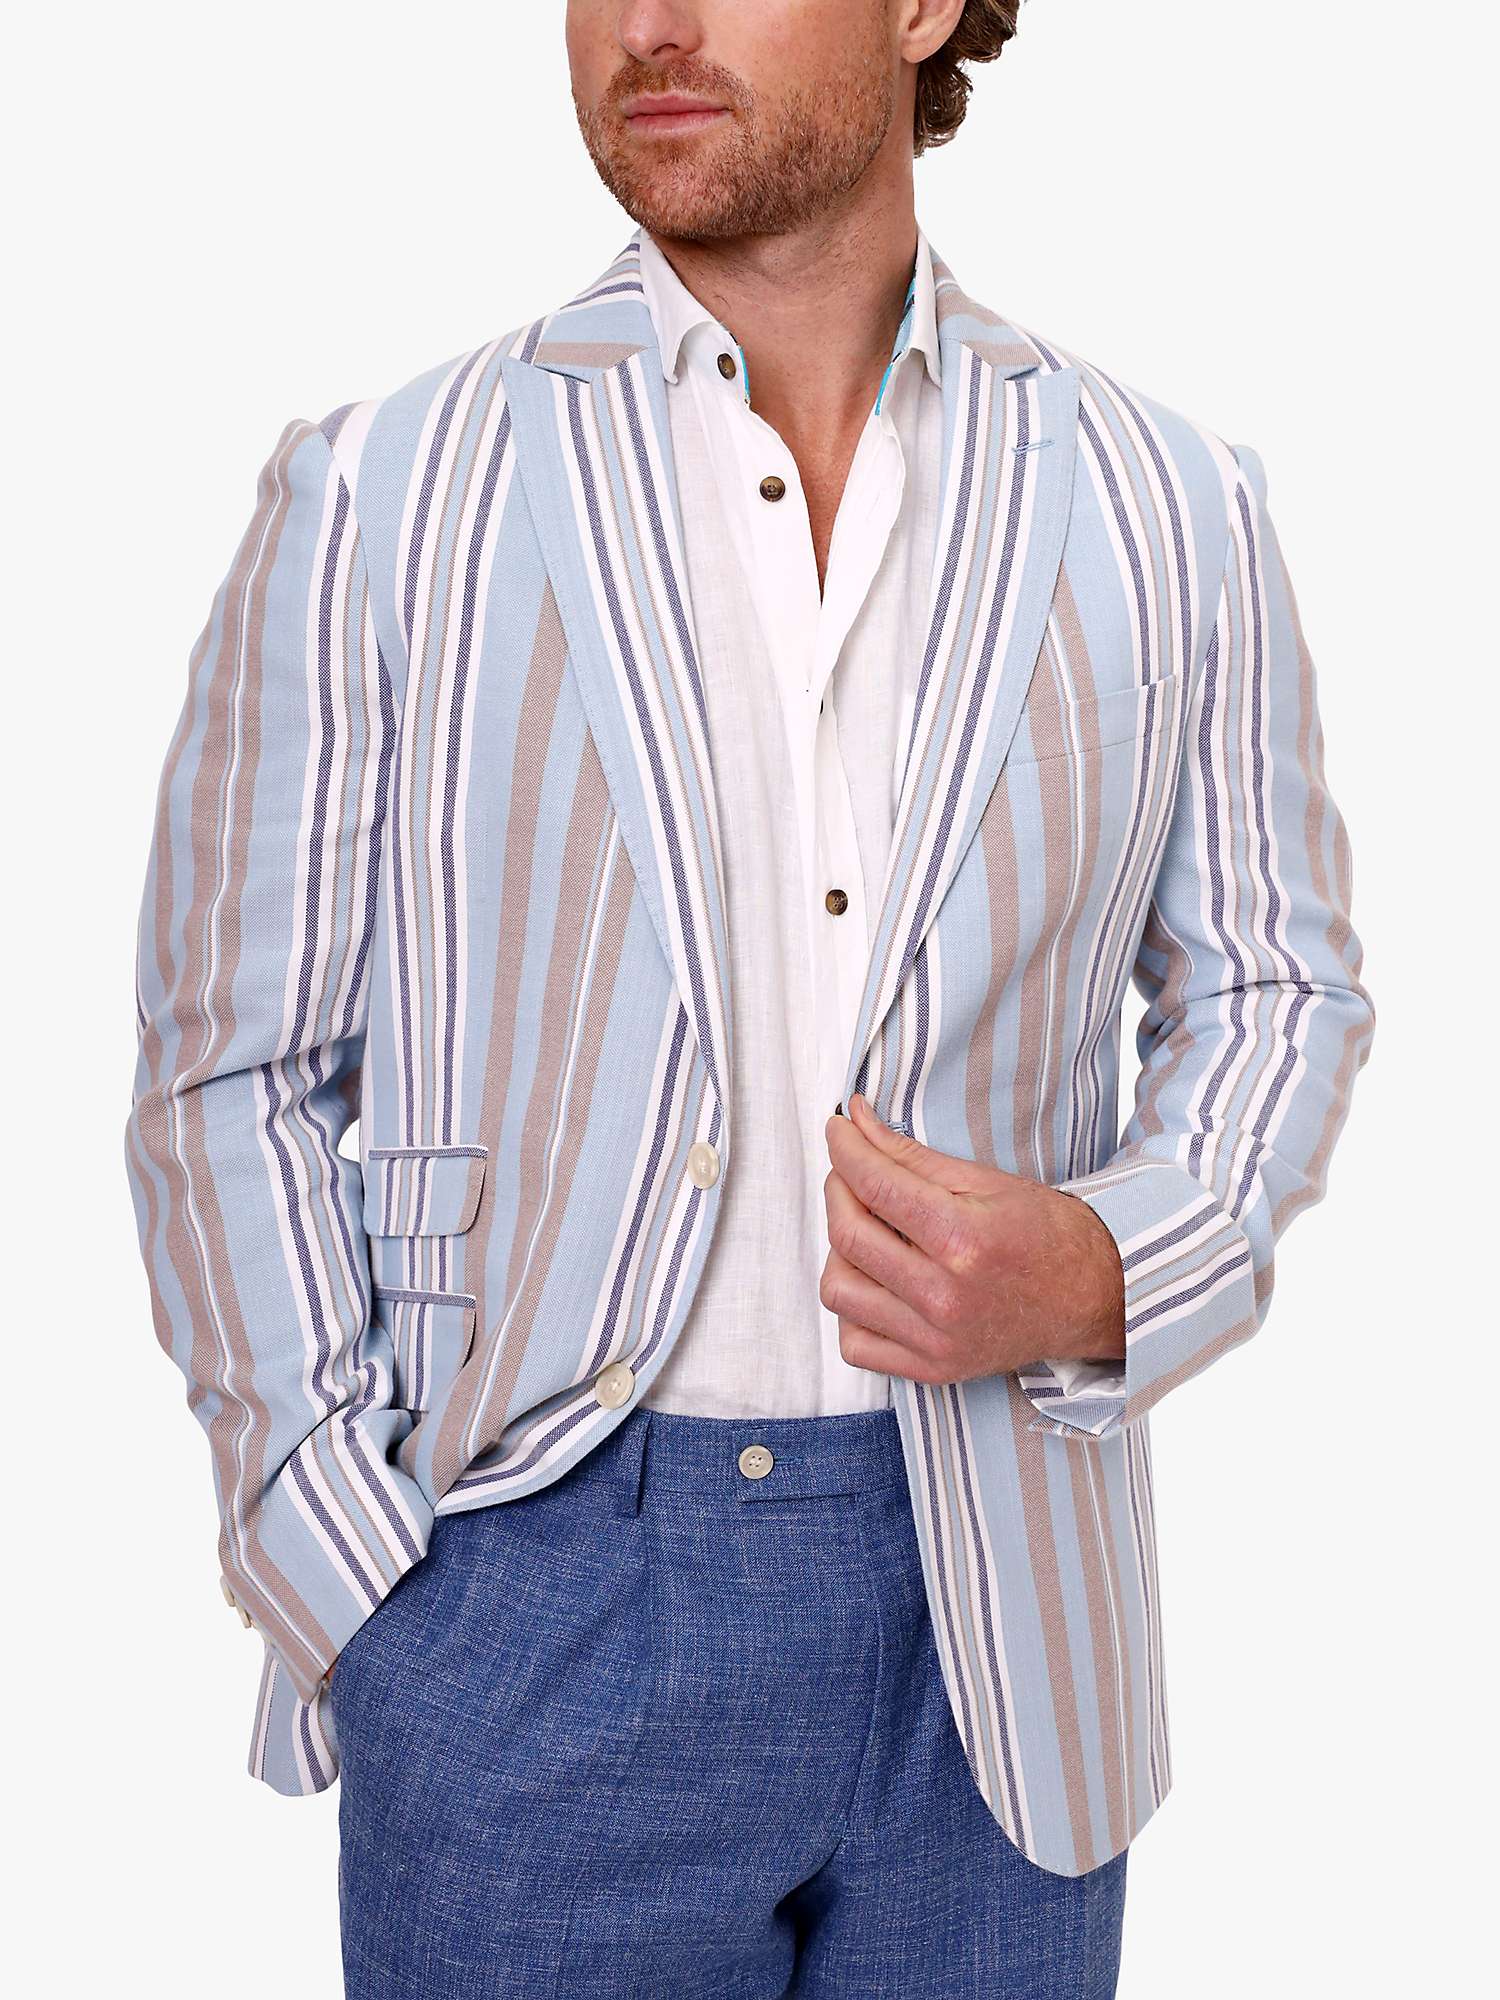 Buy KOY Stripe Cotton Blazer, Blue/Beige Online at johnlewis.com